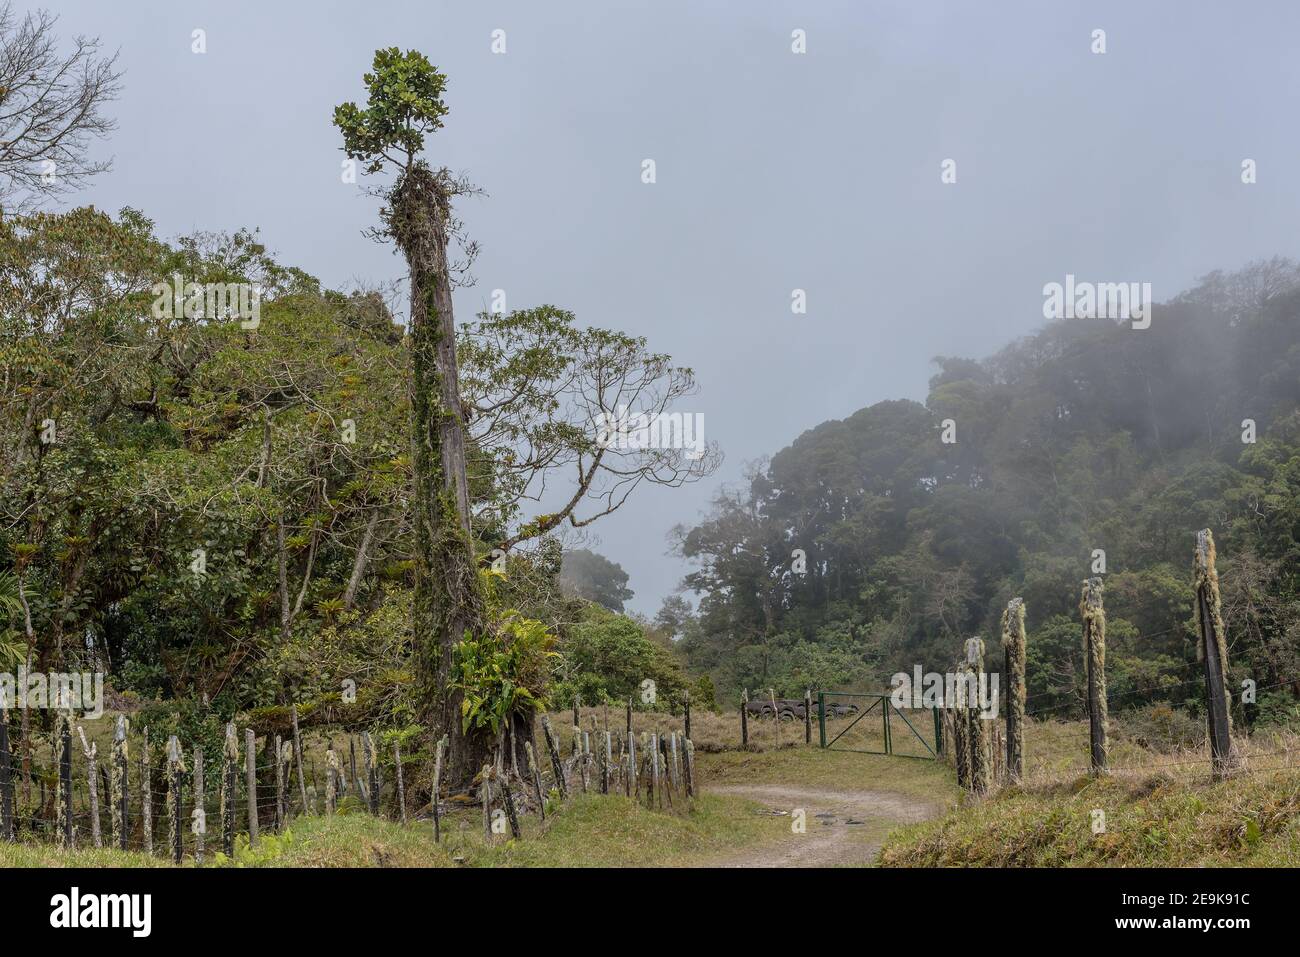 La foresta pluviale nel Parco Nazionale di Volkan Baru, Panama Foto Stock